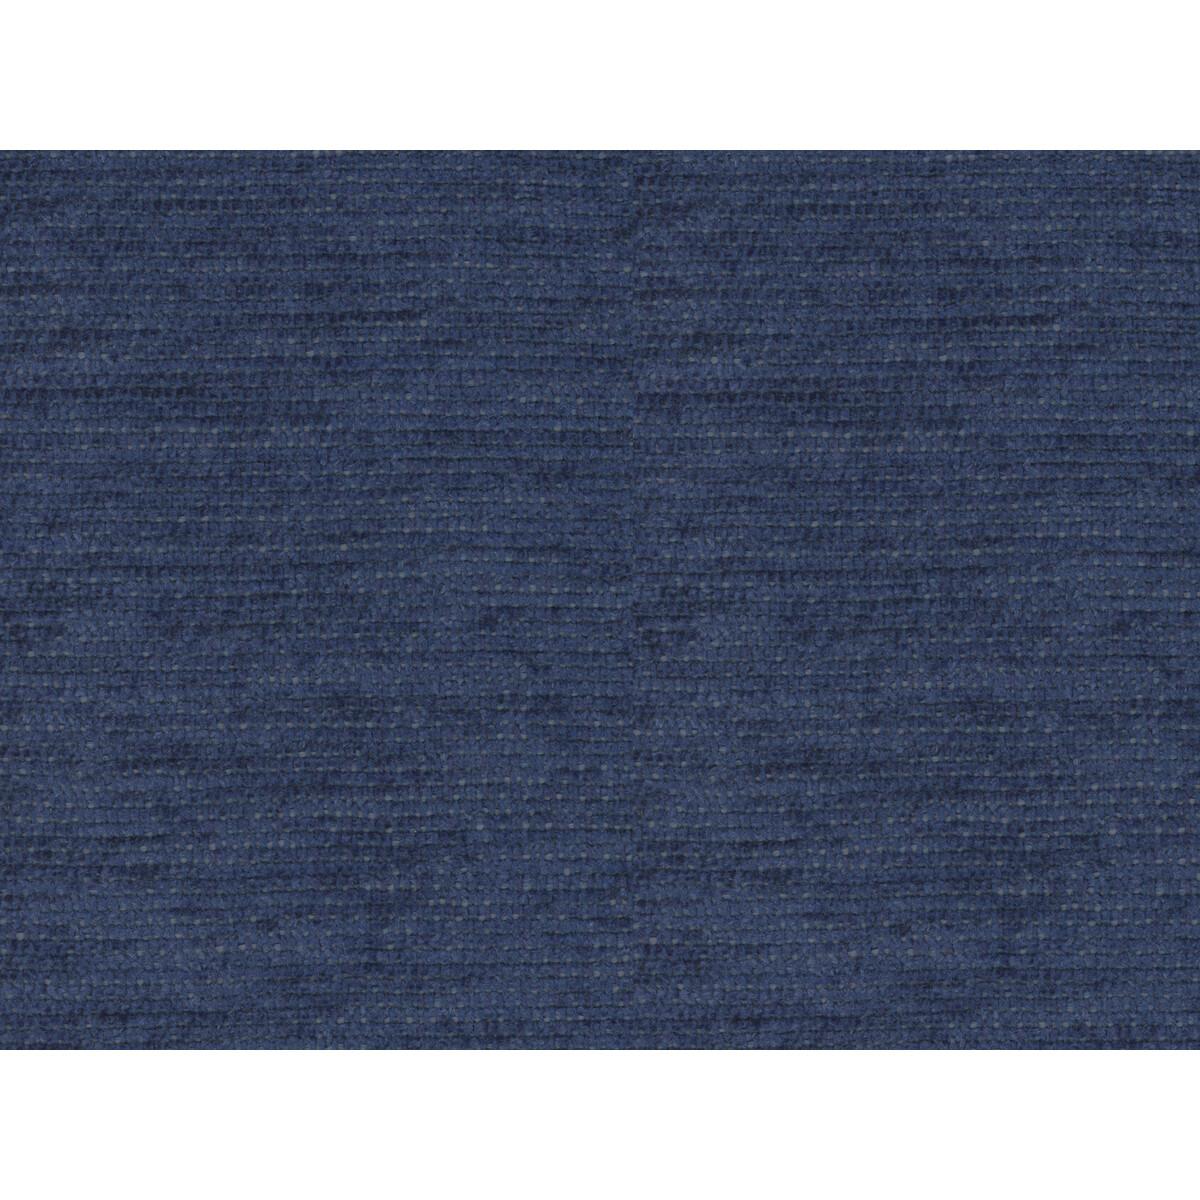 Brunschwig & Fils Revard Chenille Navy Fabric – DecoratorsBest